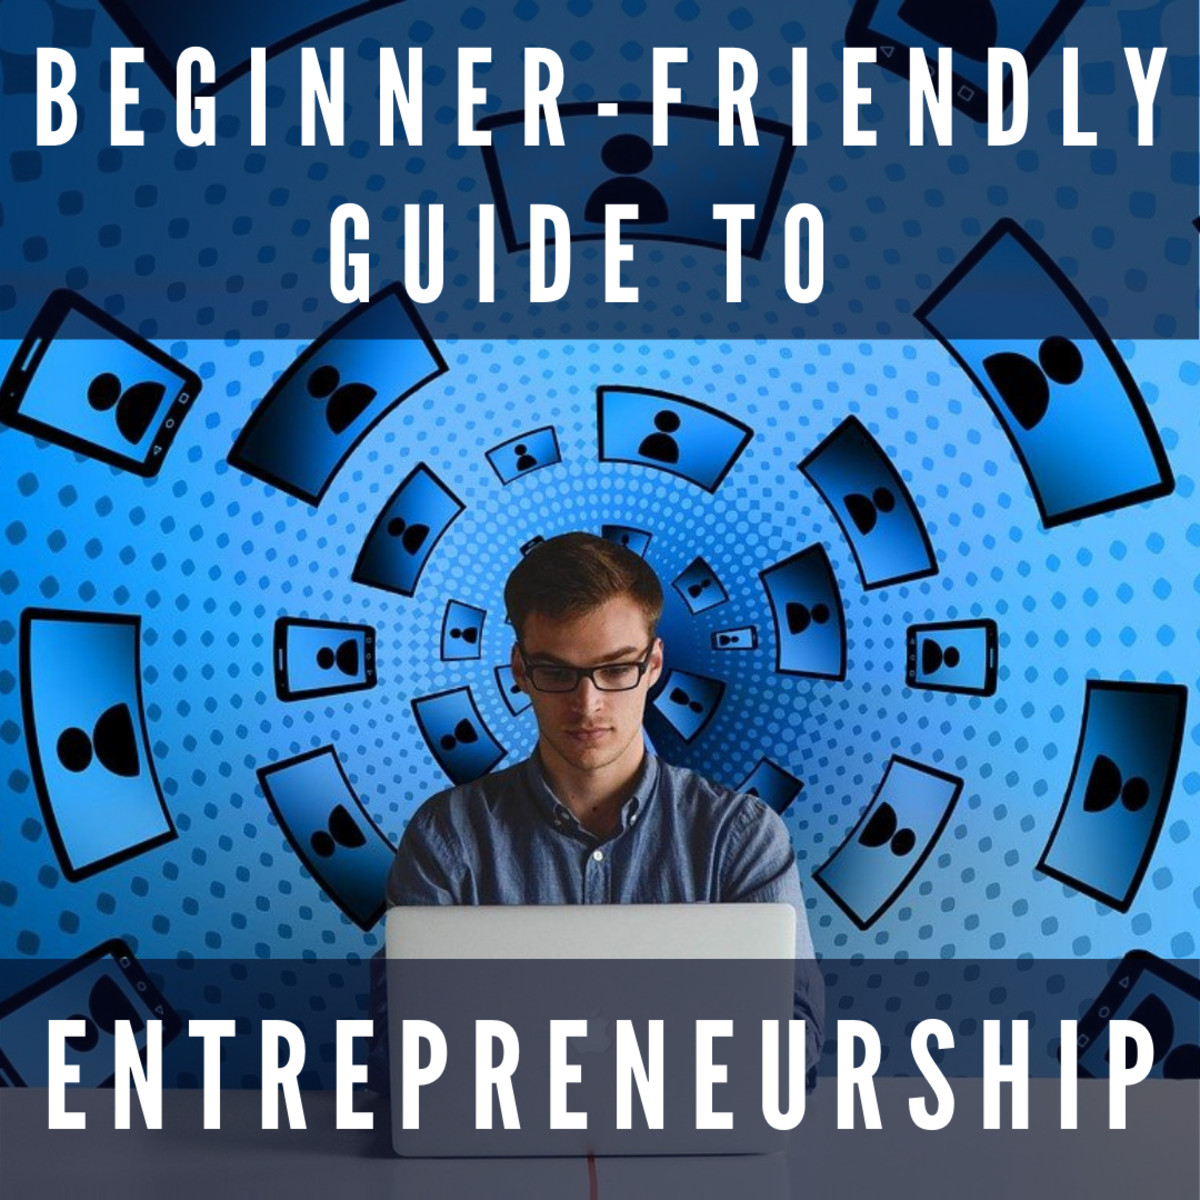 A beginner-friendly guide to entrepreneurship